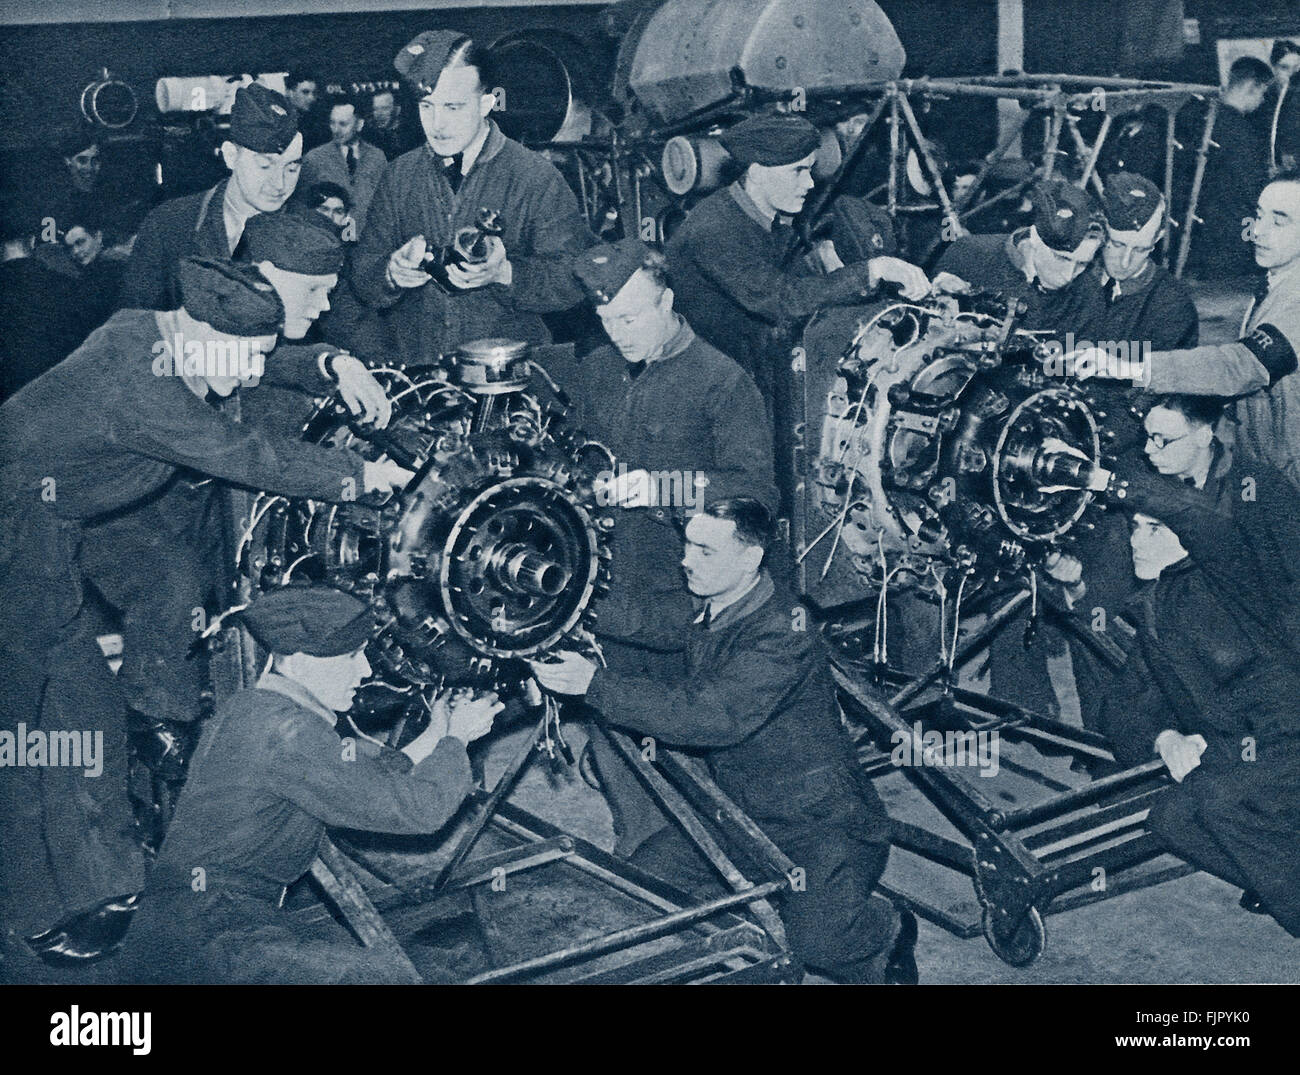 Les cadets de l'air ,c. 1940. La DEUXIÈME GUERRE MONDIALE, à un camp d'entraînement de la force aérienne. L'apprentissage de l'aero engine et le mechaniscs. Banque D'Images